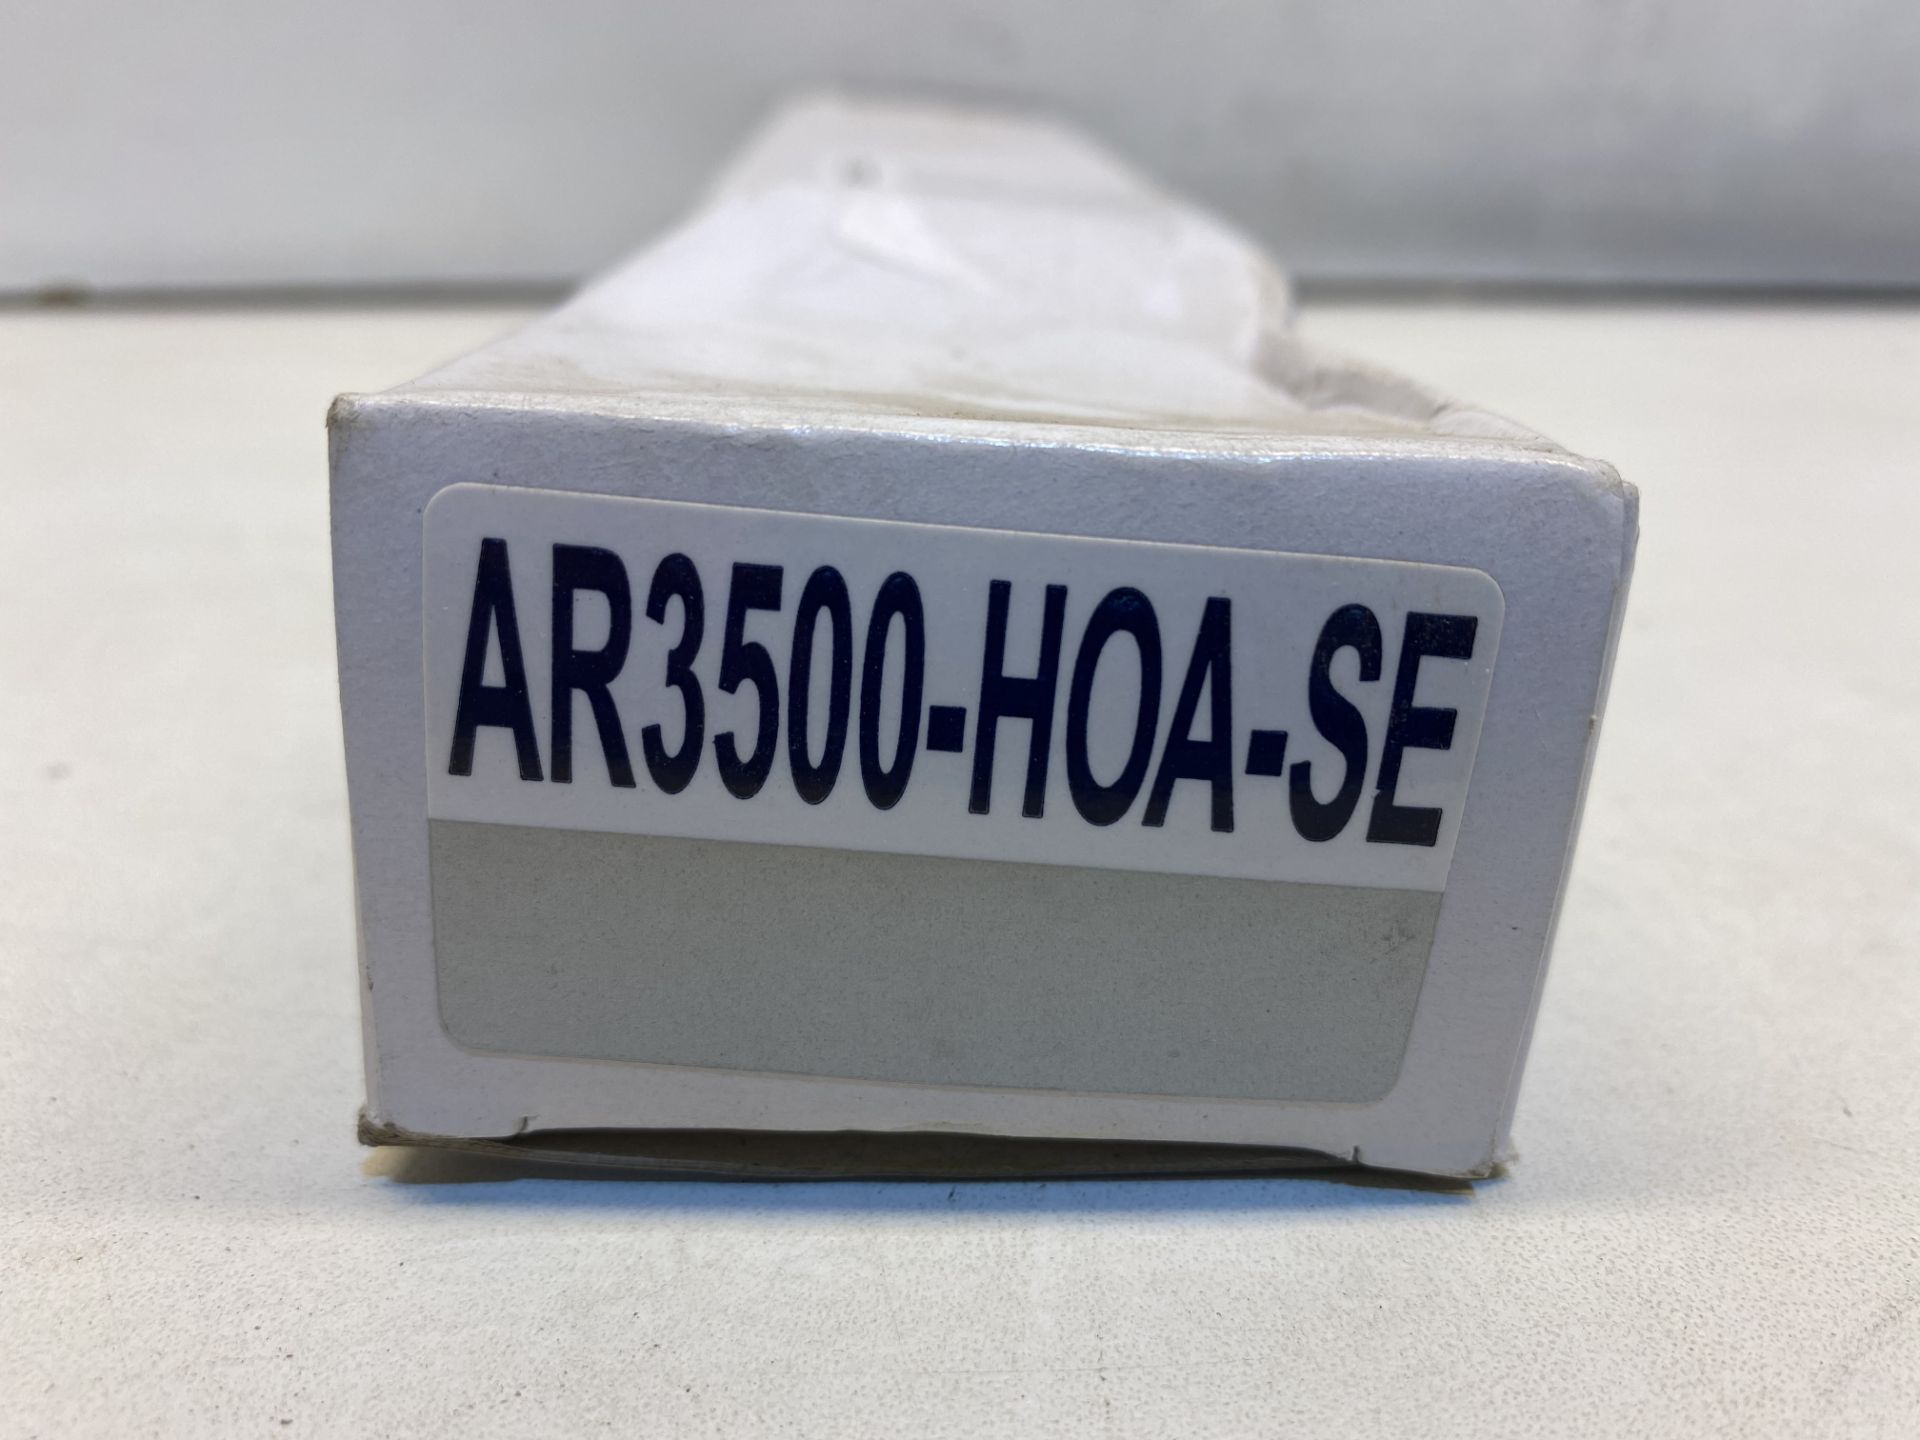 4 x Arrone Fire Door Closer | AR3500 - Image 2 of 3